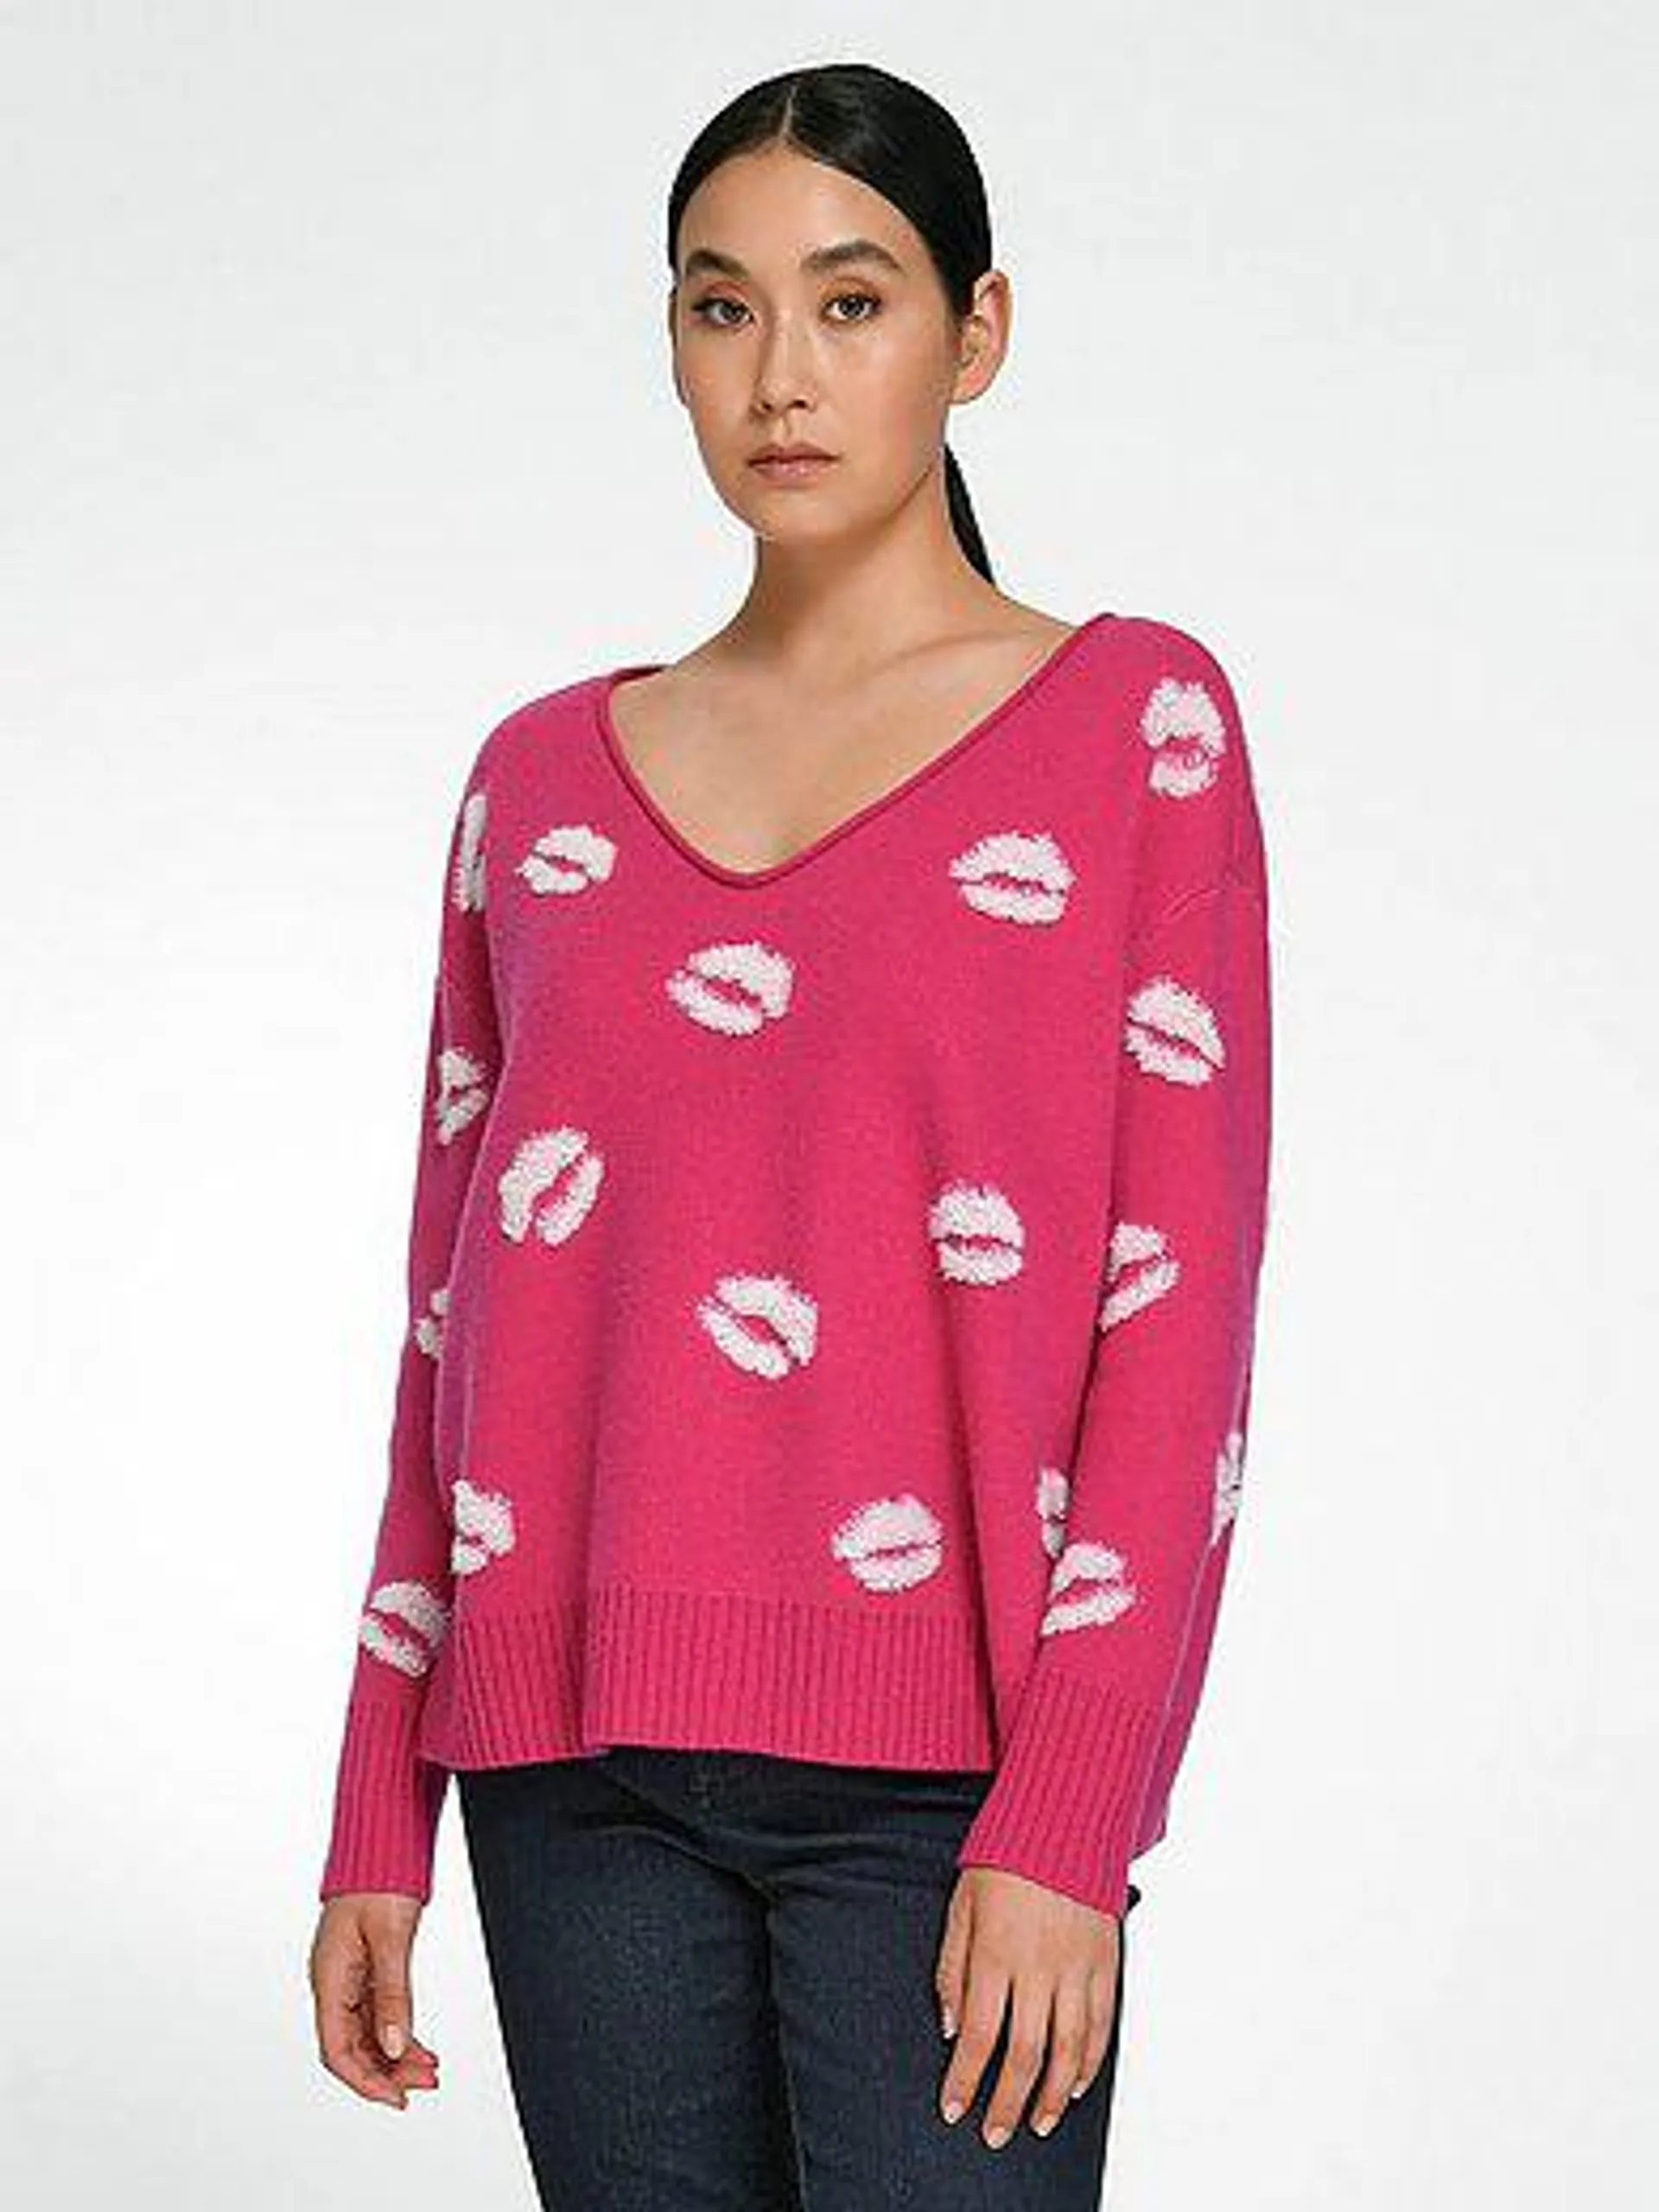 V-neck jumper made of 100% cashmere